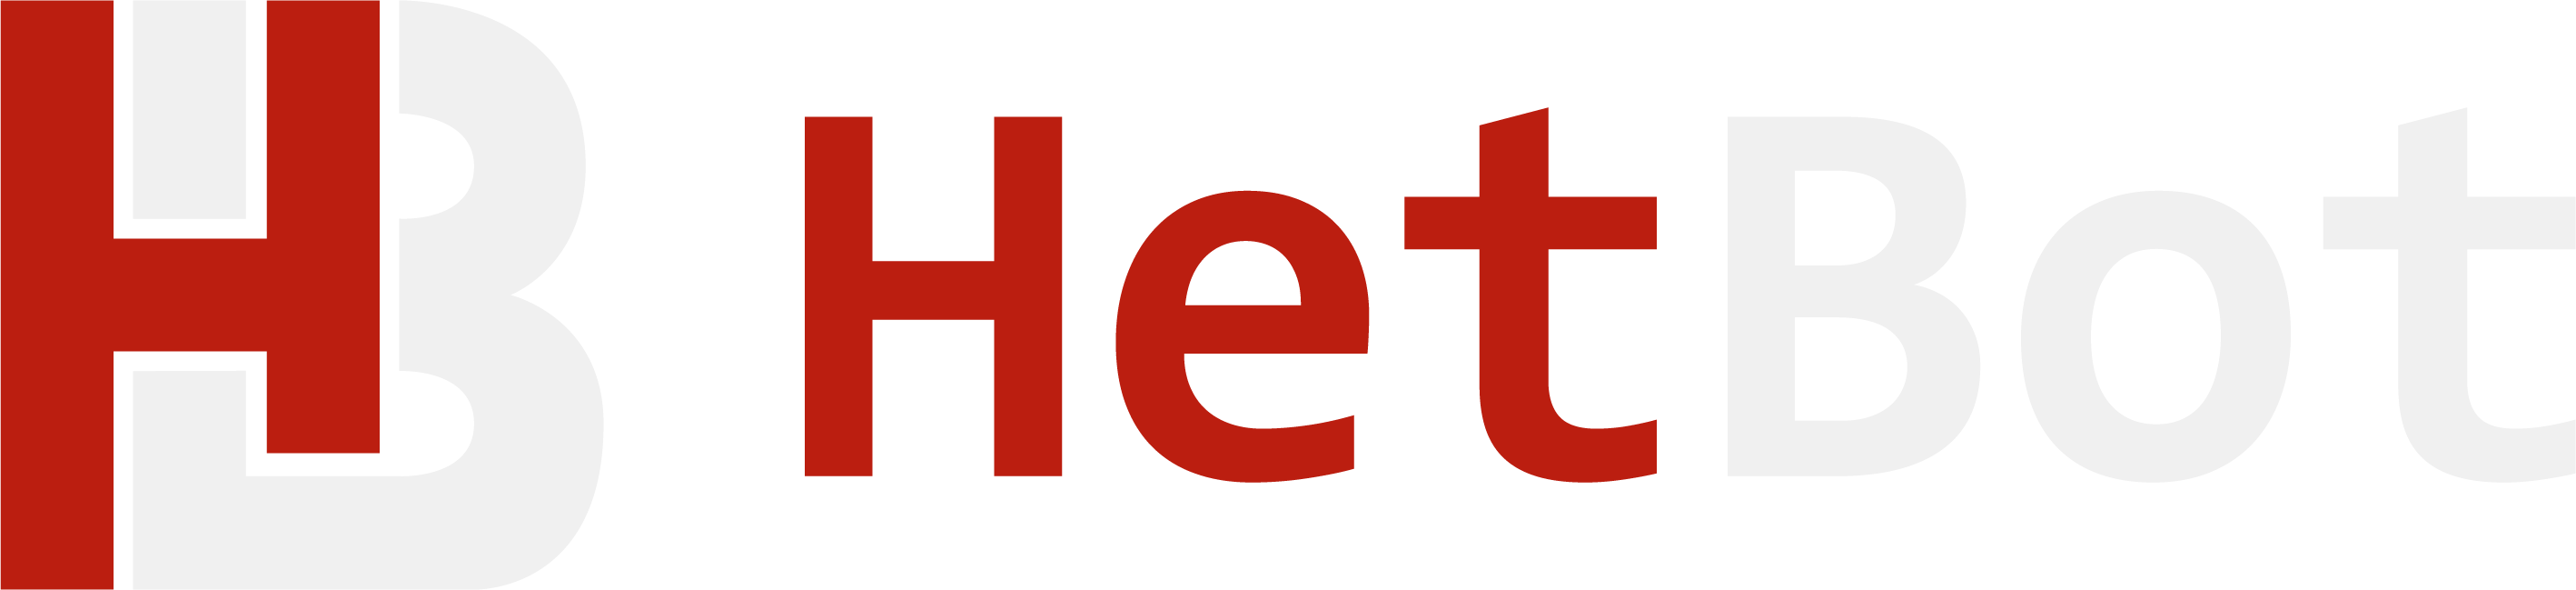 HETBOT logo